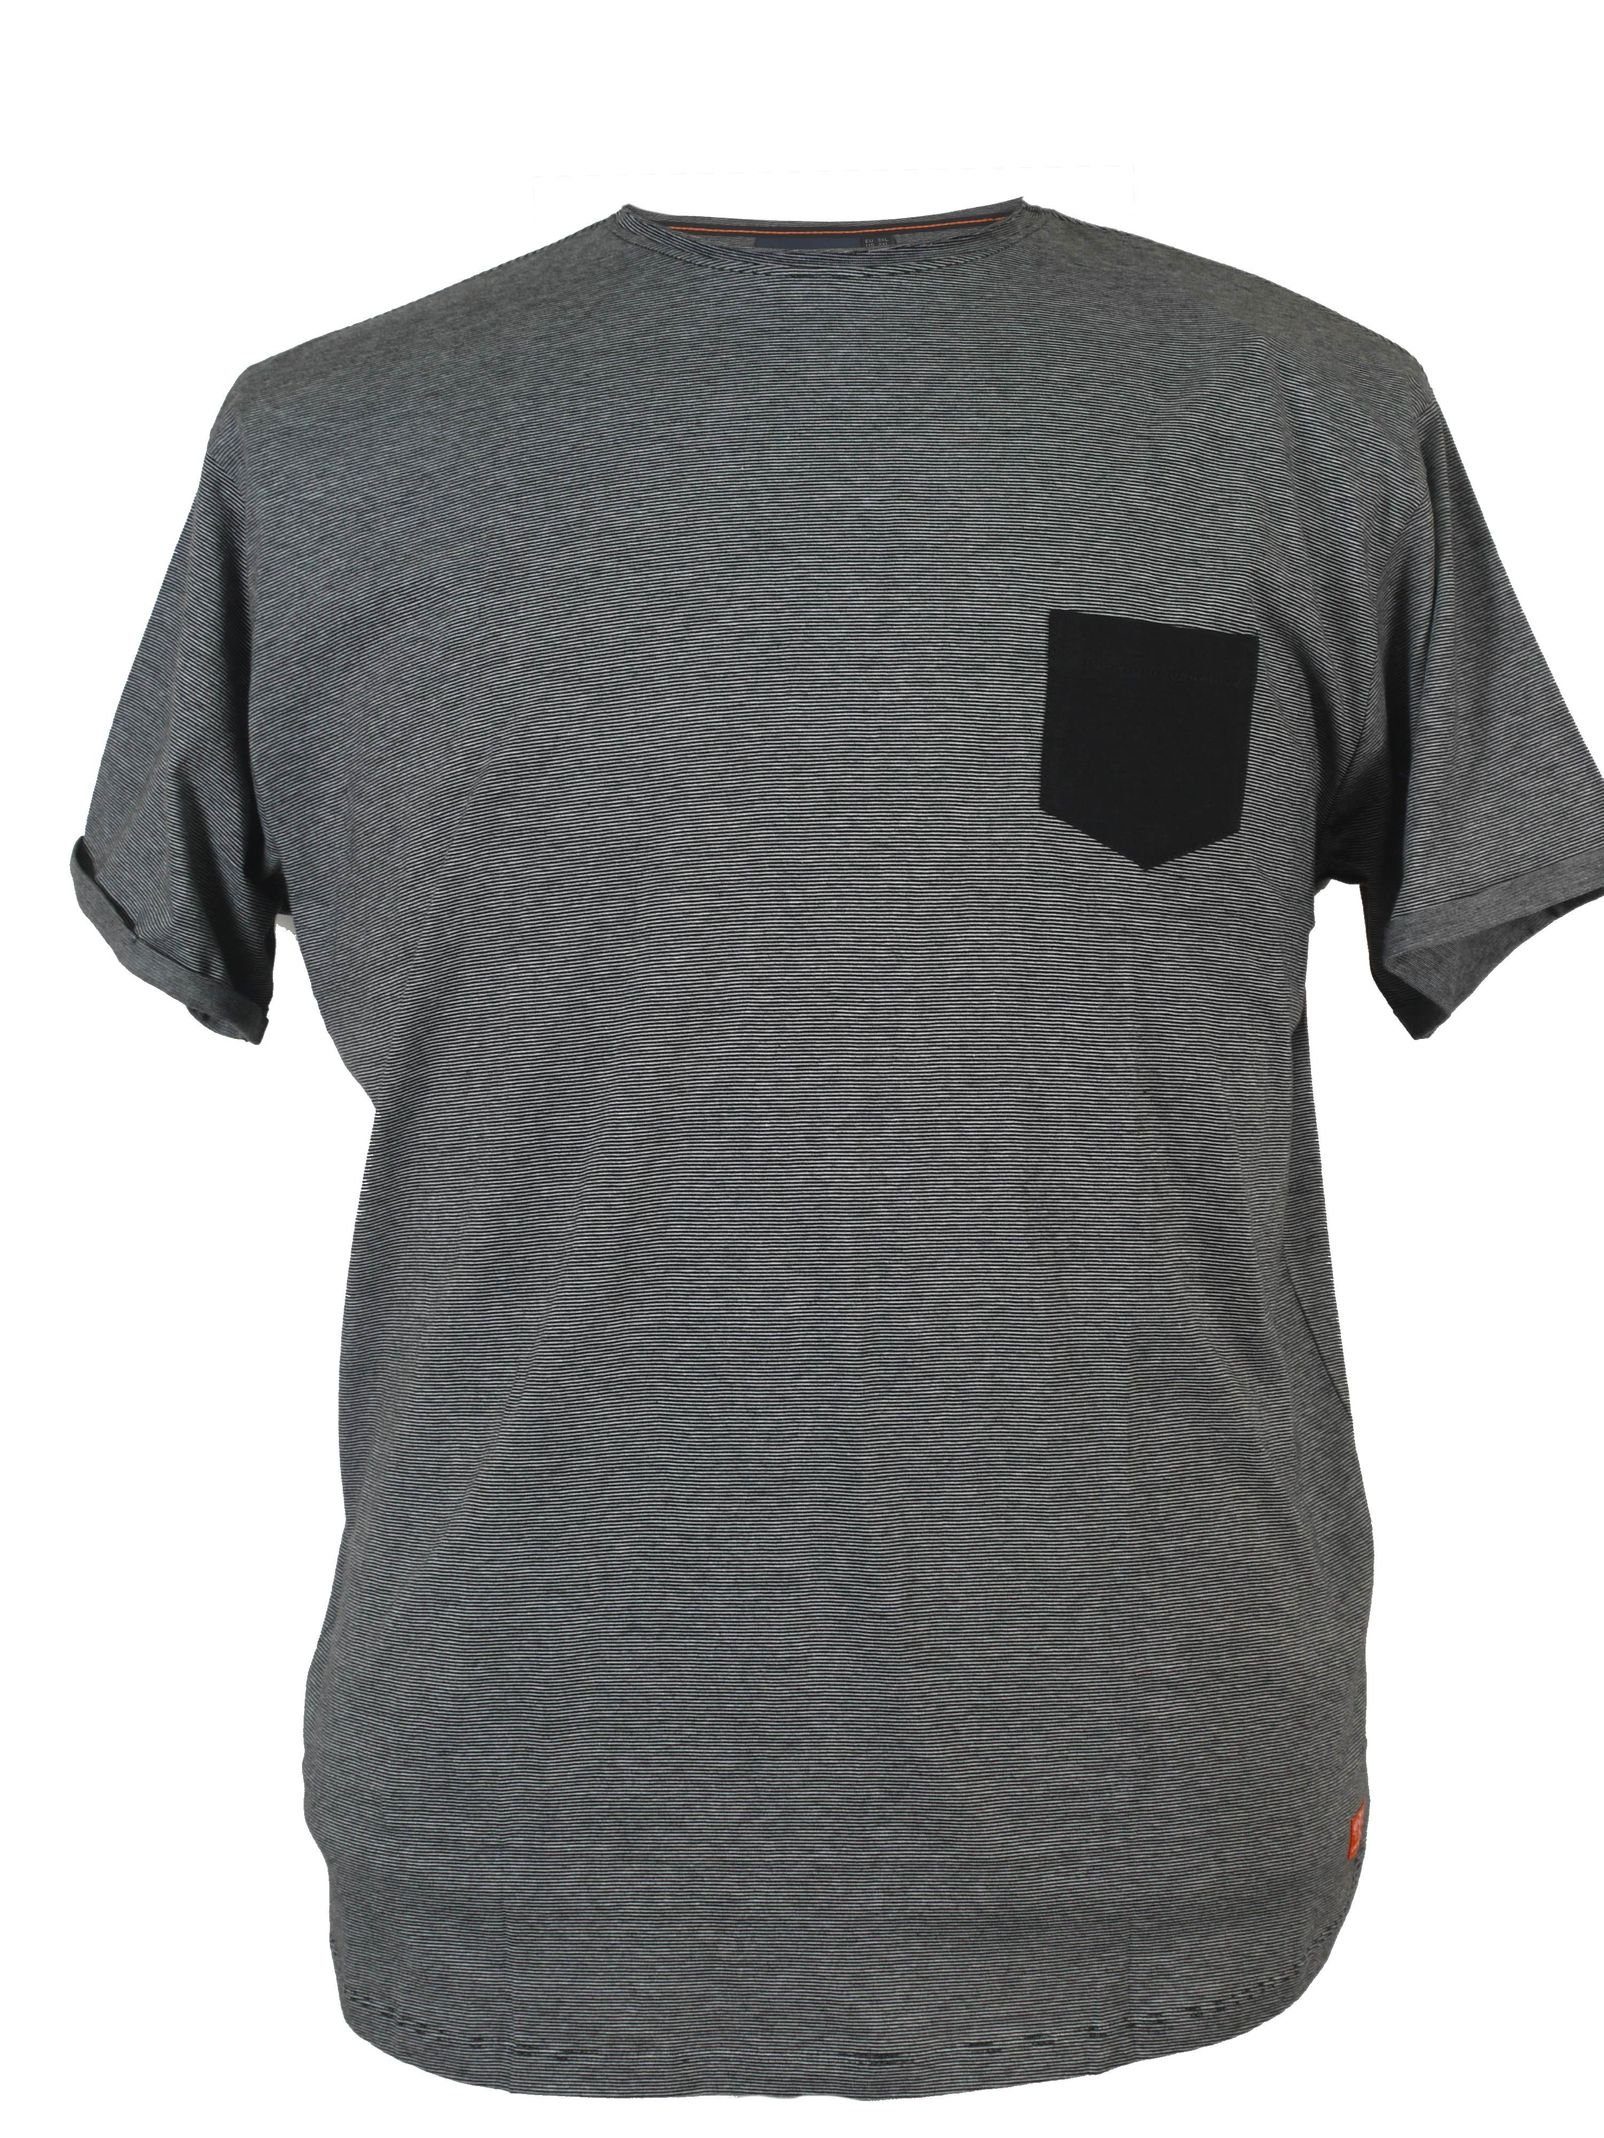 T-Shirt North grey 4 von Gestreiftes dark 56 56°4, north T-Shirt